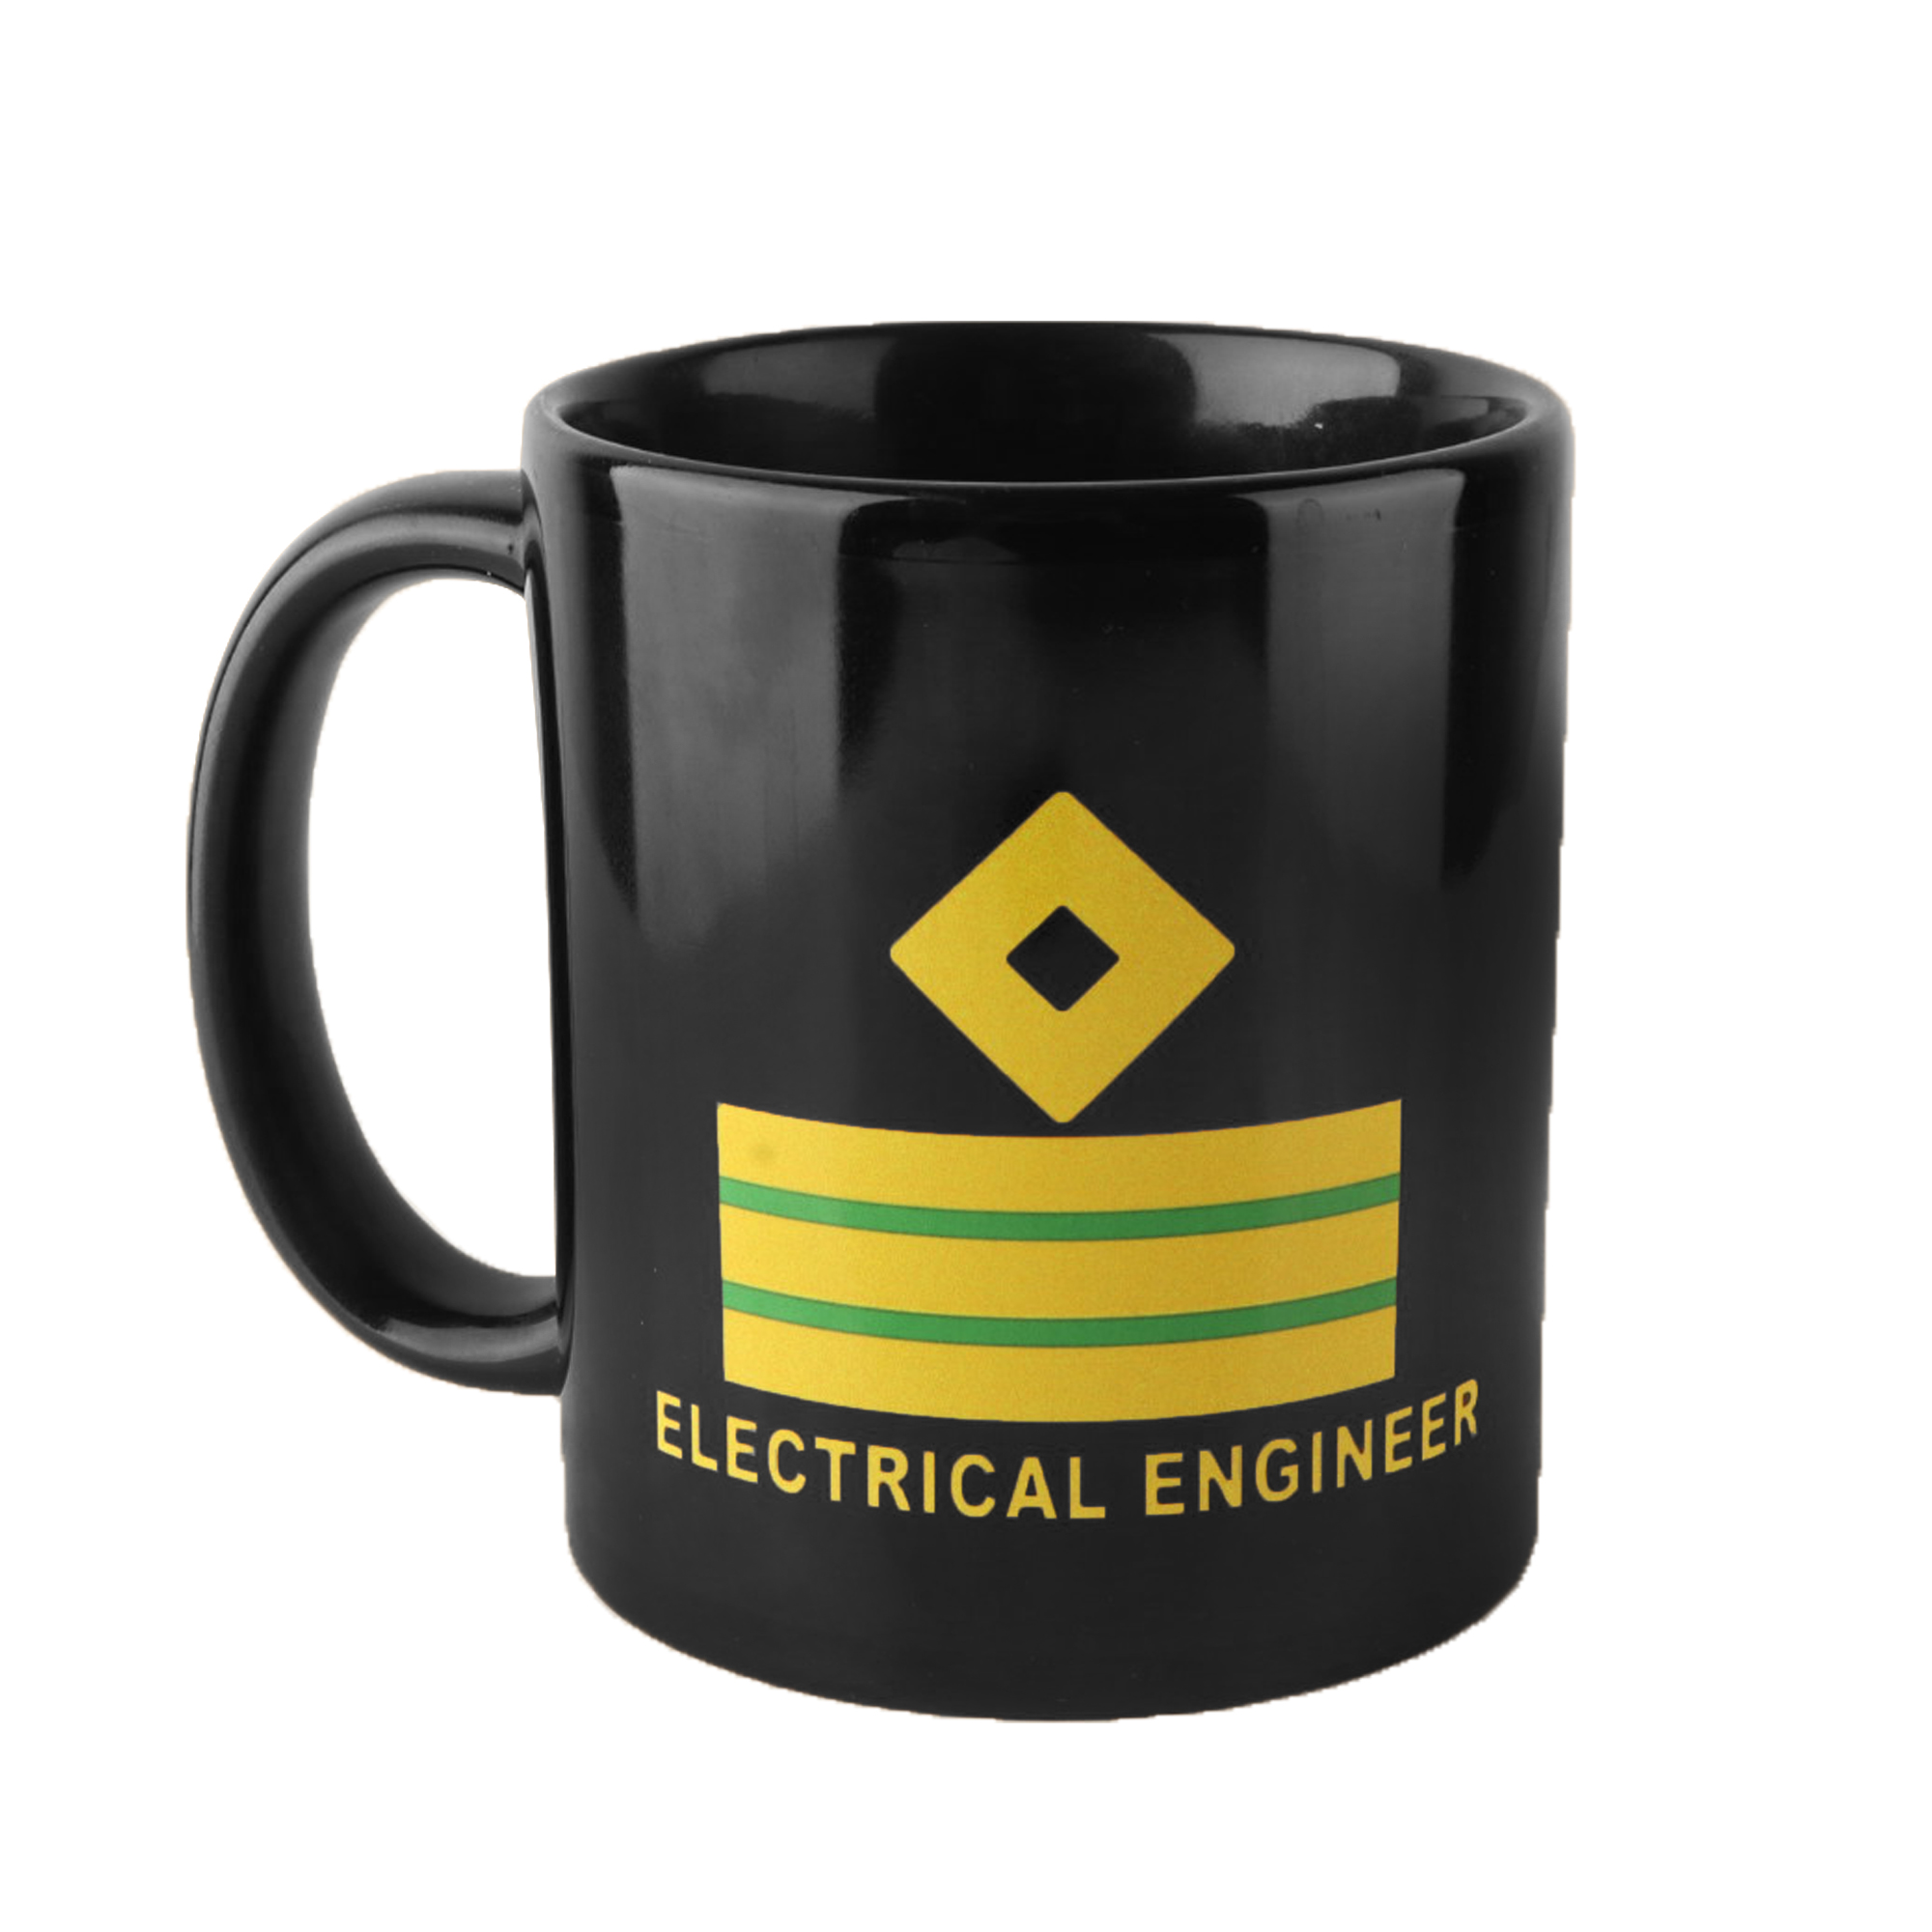 Electrical Engineer Coffee Mug / Cup